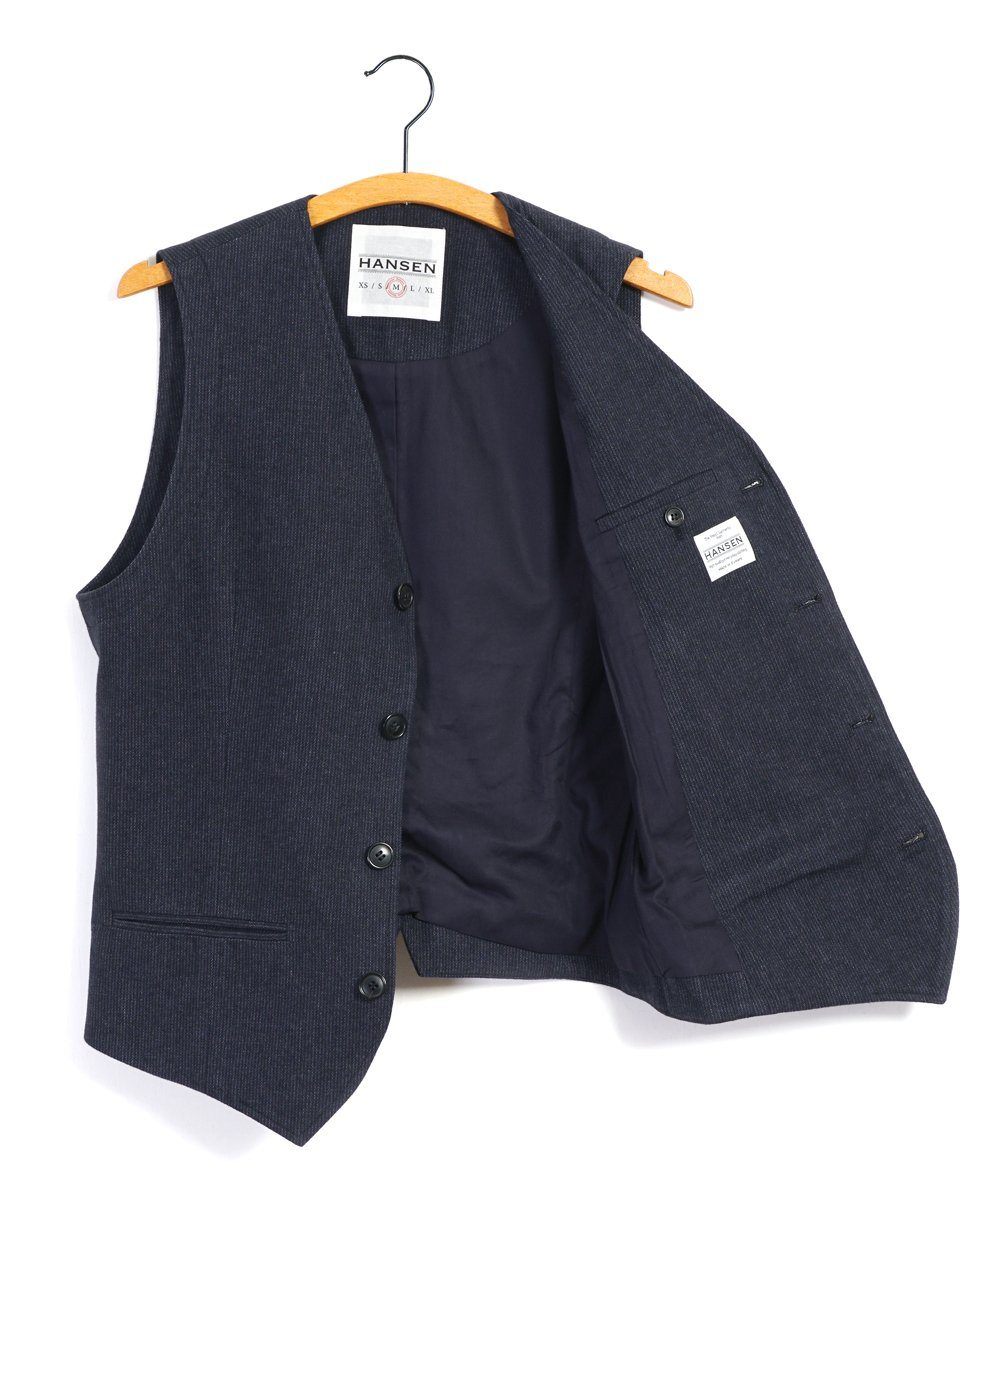 HANSEN GARMENTS - DANIEL | Classic Waistcoat | Brushed Blue - HANSEN Garments